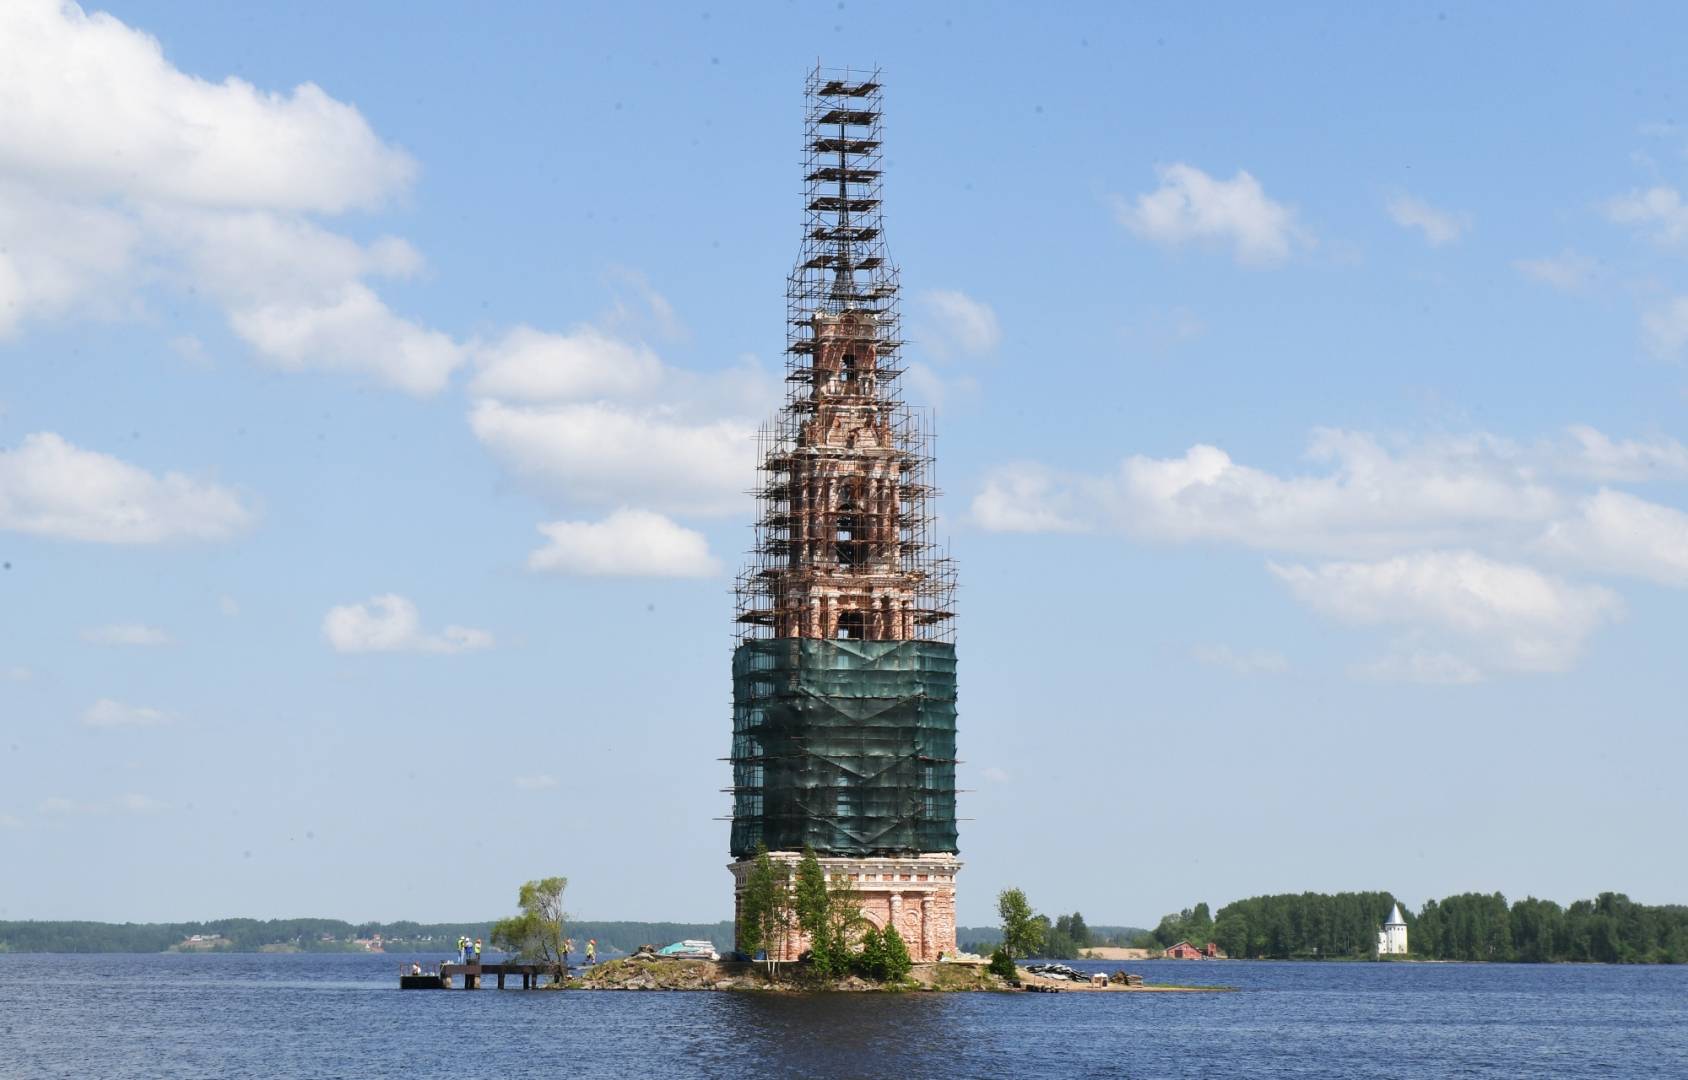 Достопримечательности калязина-затопленный город на берегу волги: колокольня в воде, обсерватория